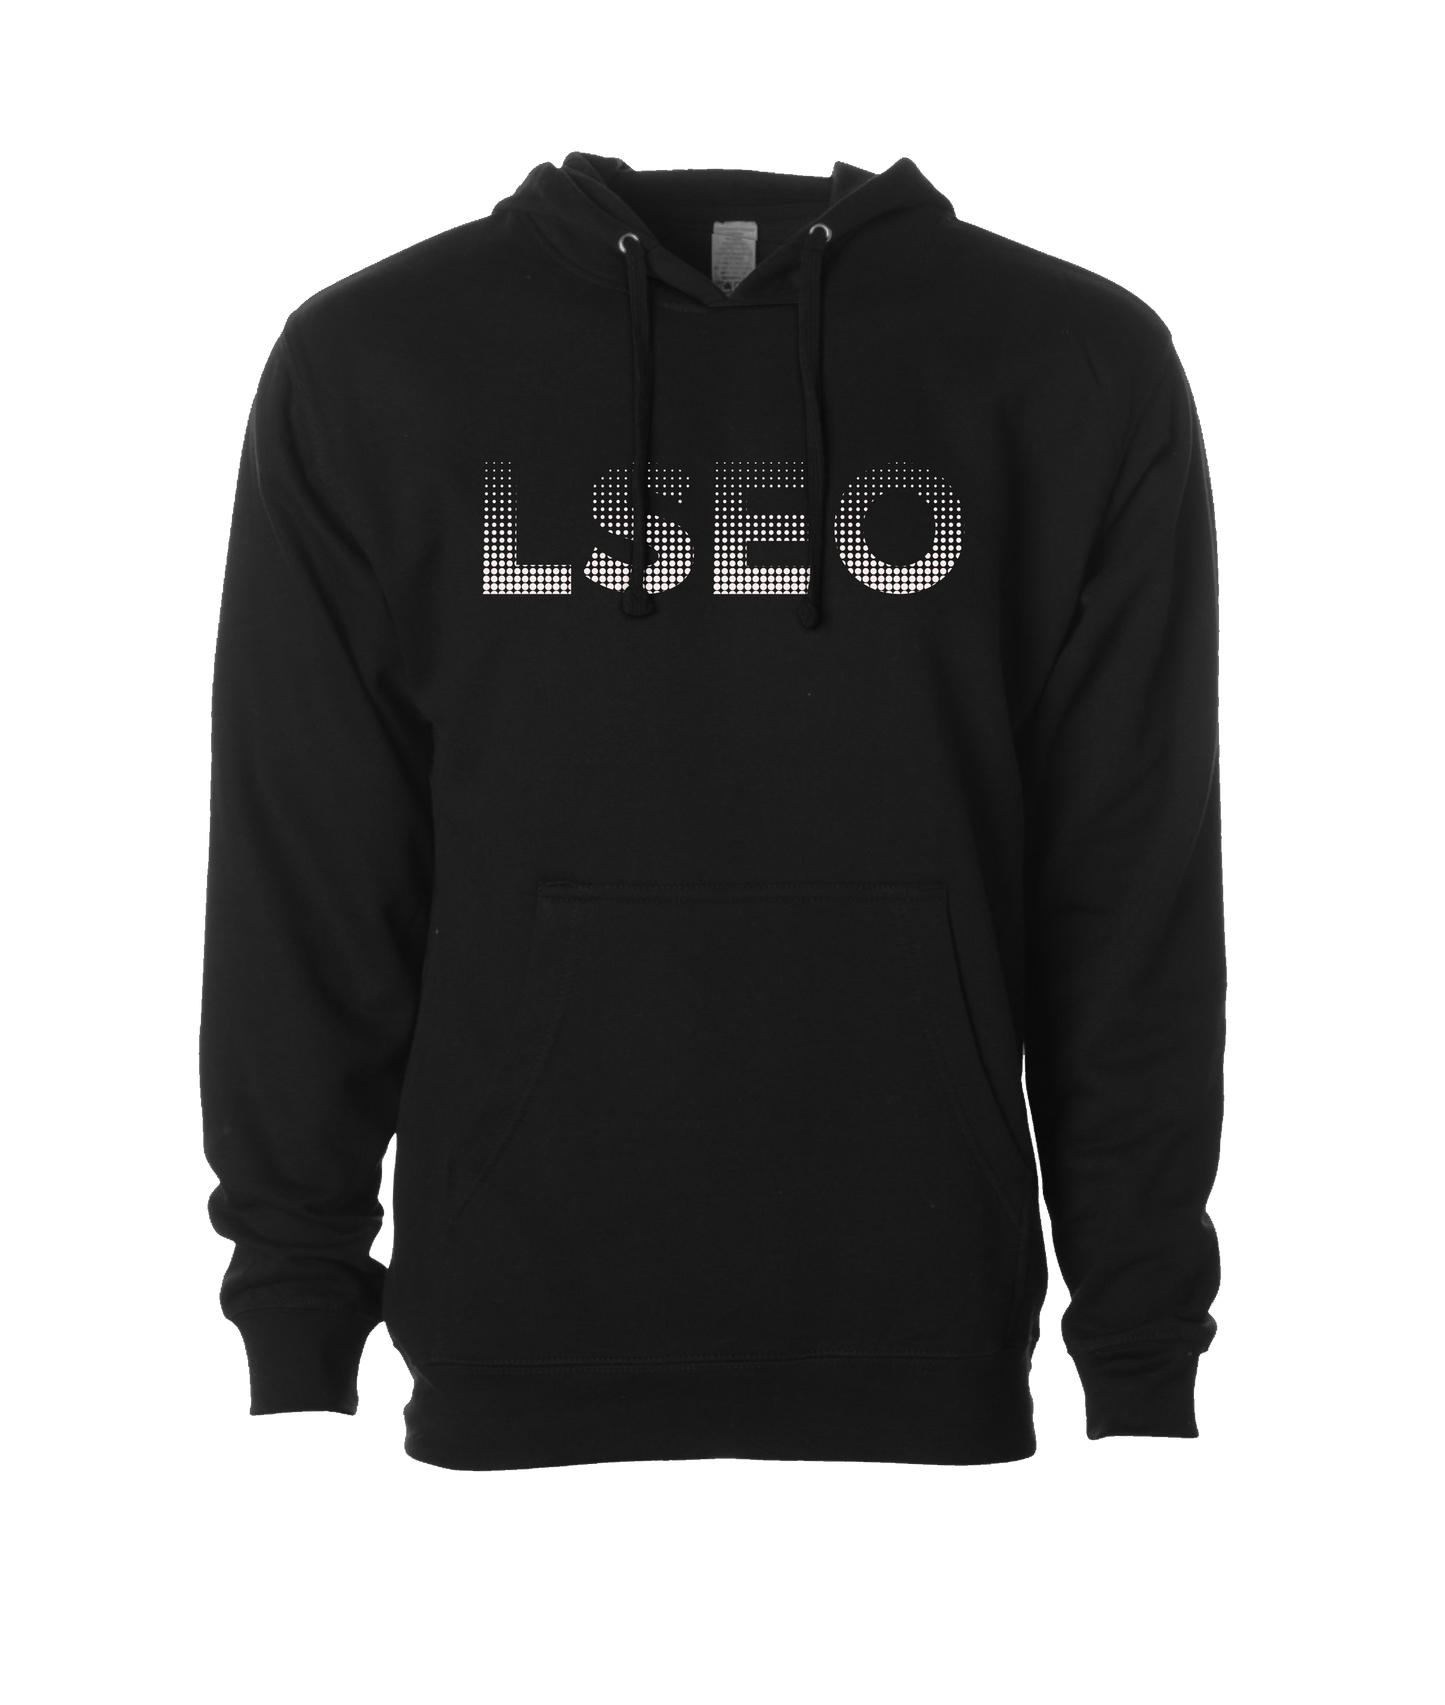 LSEO - Logo - Black Hoodie